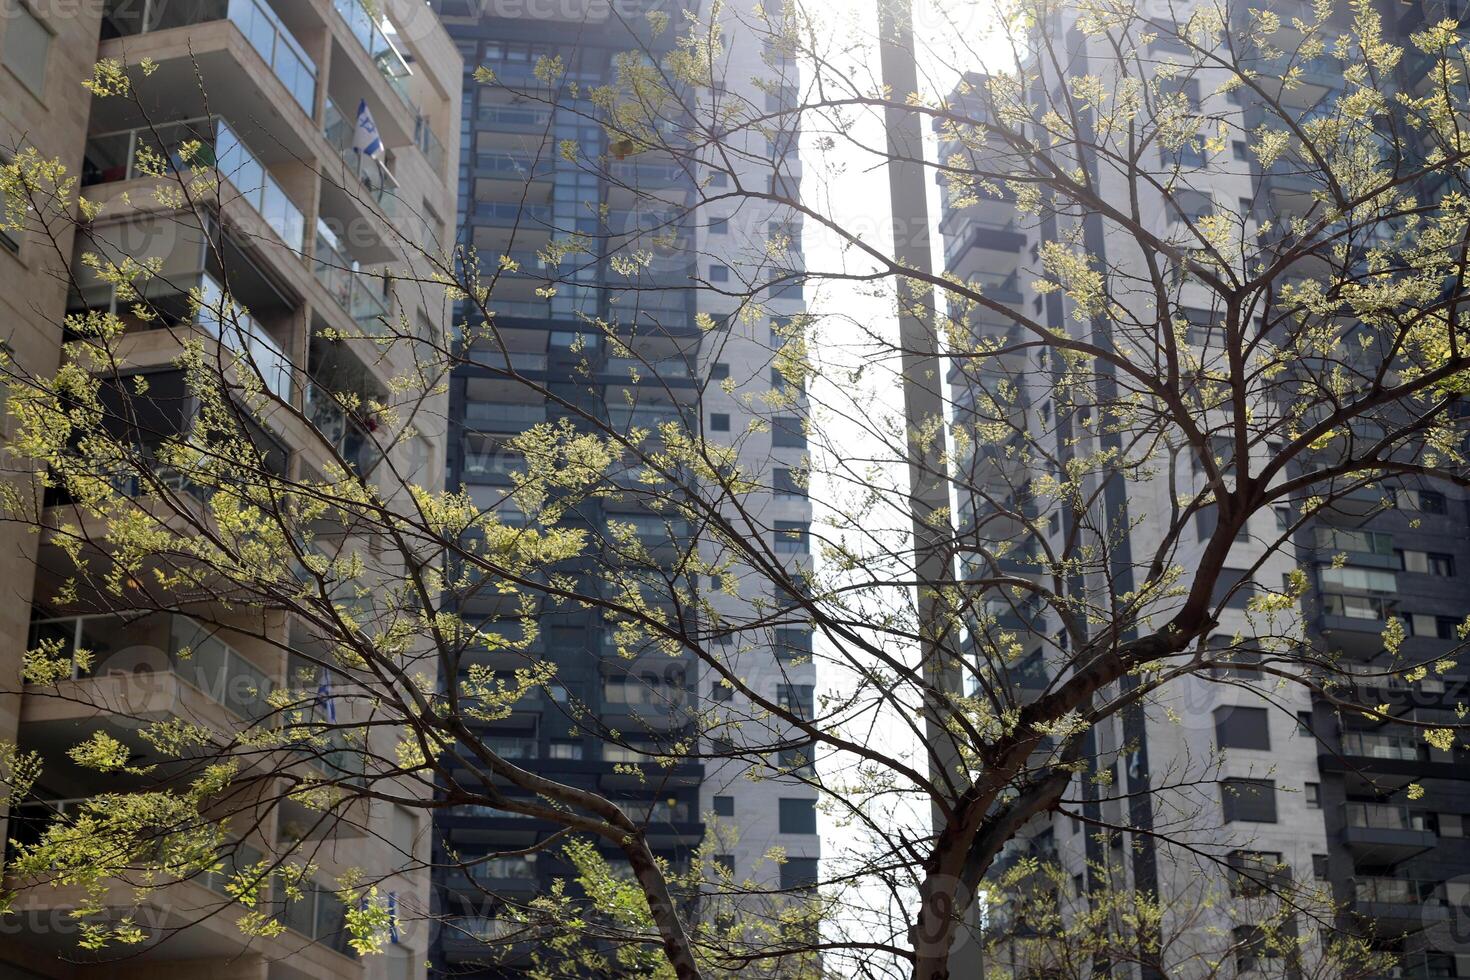 byggnader och strukturer i tel aviv mot de bakgrund av grenar och löv av lång träd. foto